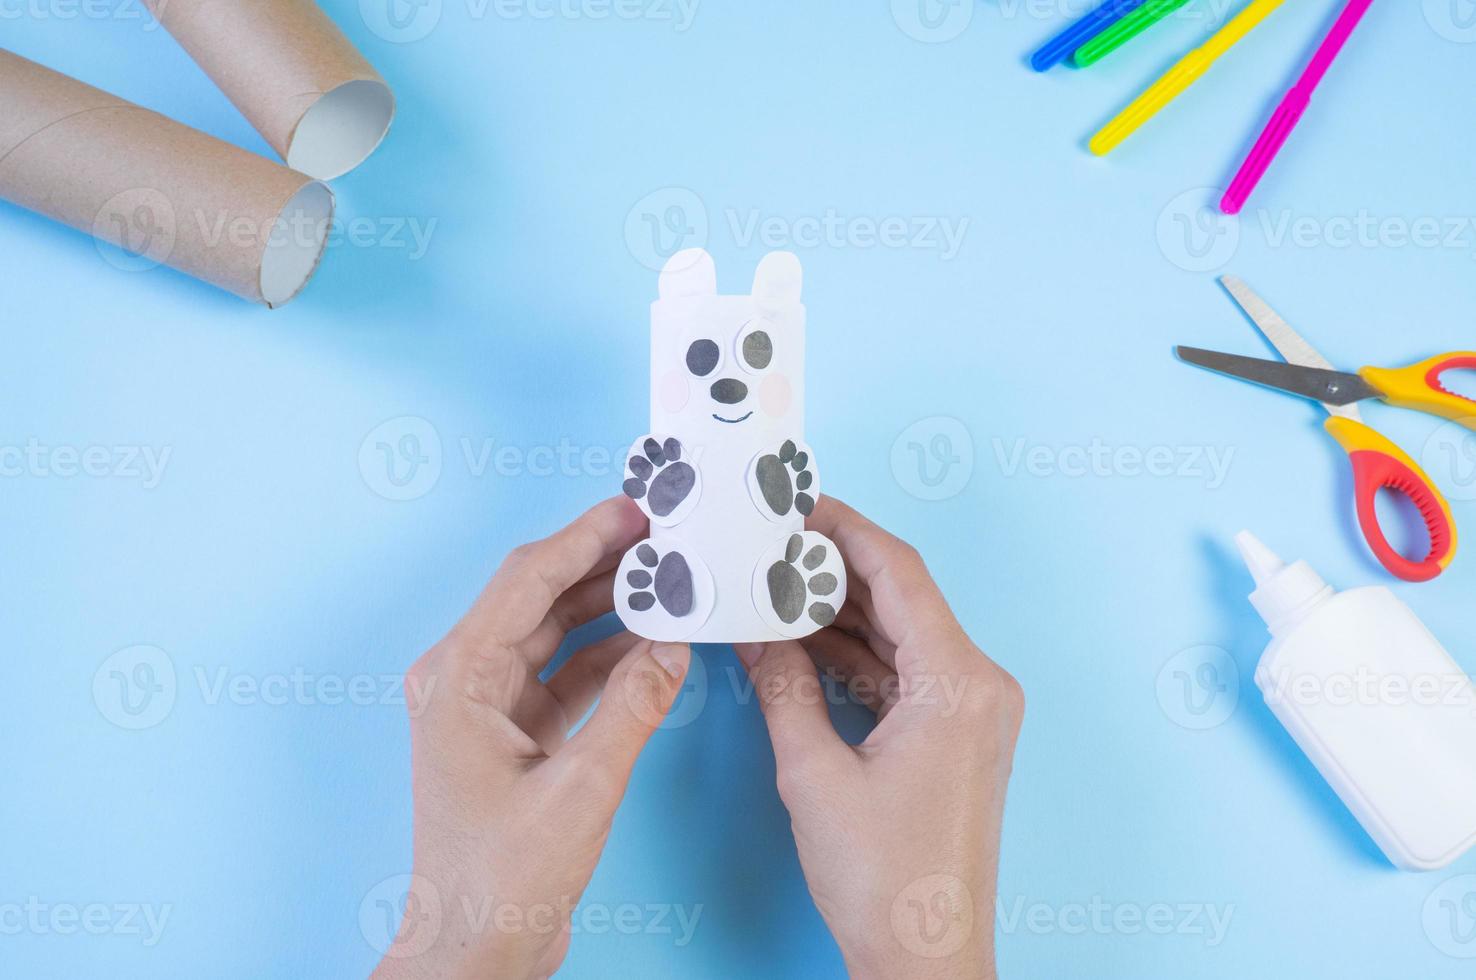 artesanato diy fácil festivo para crianças. rolo de urso de brinquedo de papel higiênico em um fundo azul. decoração criativa ecologicamente correta, reutilização, reciclagem, conceito artesanal sem desperdício mínimo foto